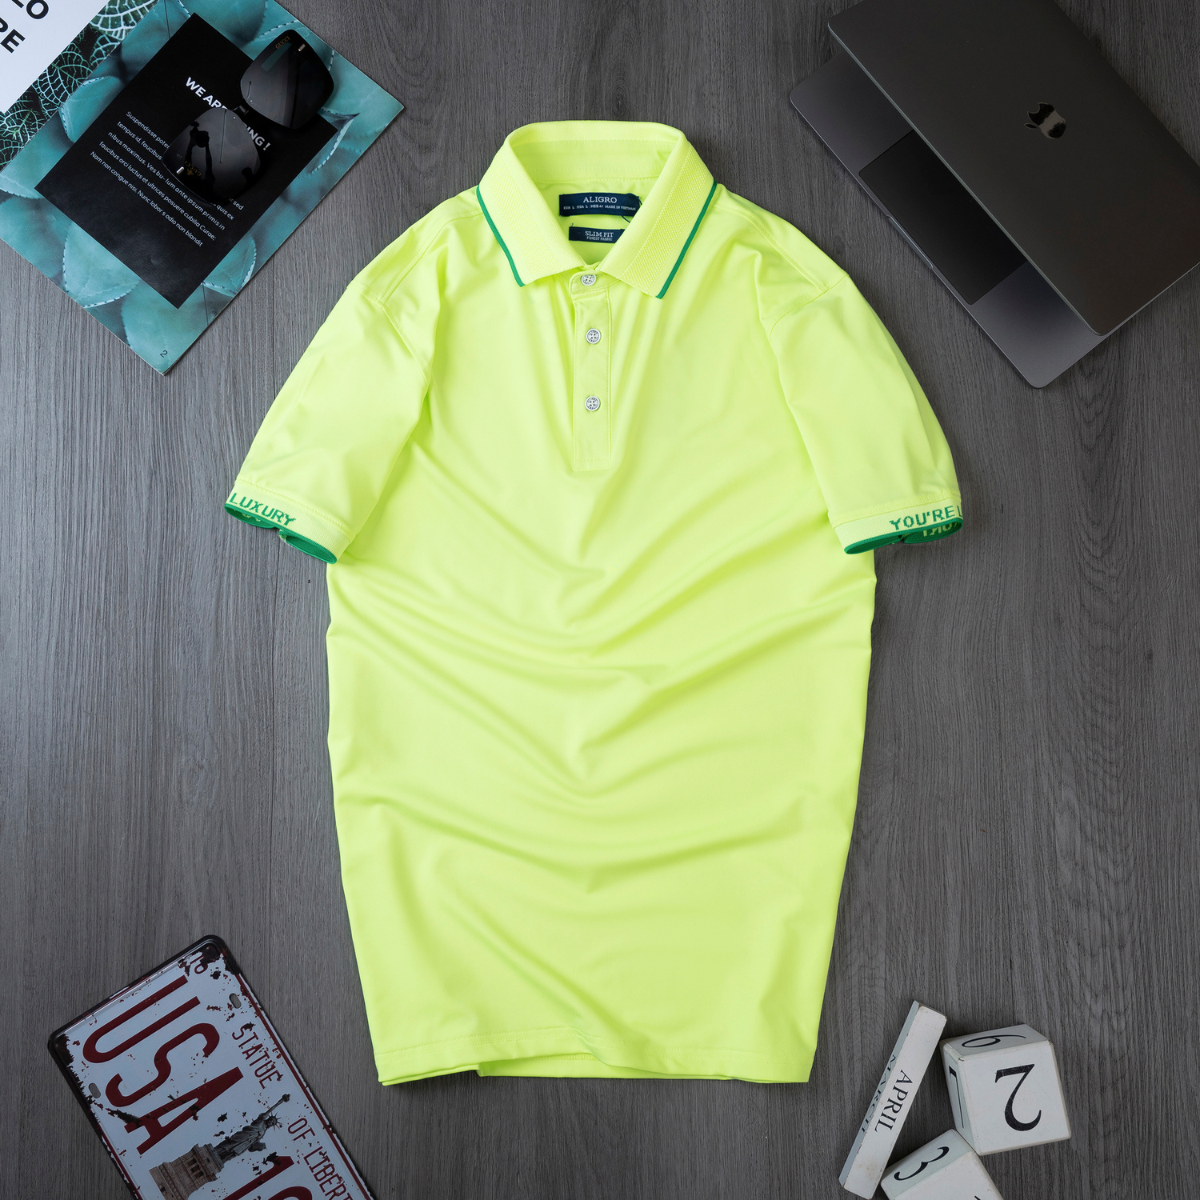 Áo polo golf nam ngắn tay ALIGRO chất vải coolmax màu xanh chuối năng động ALGPLO104